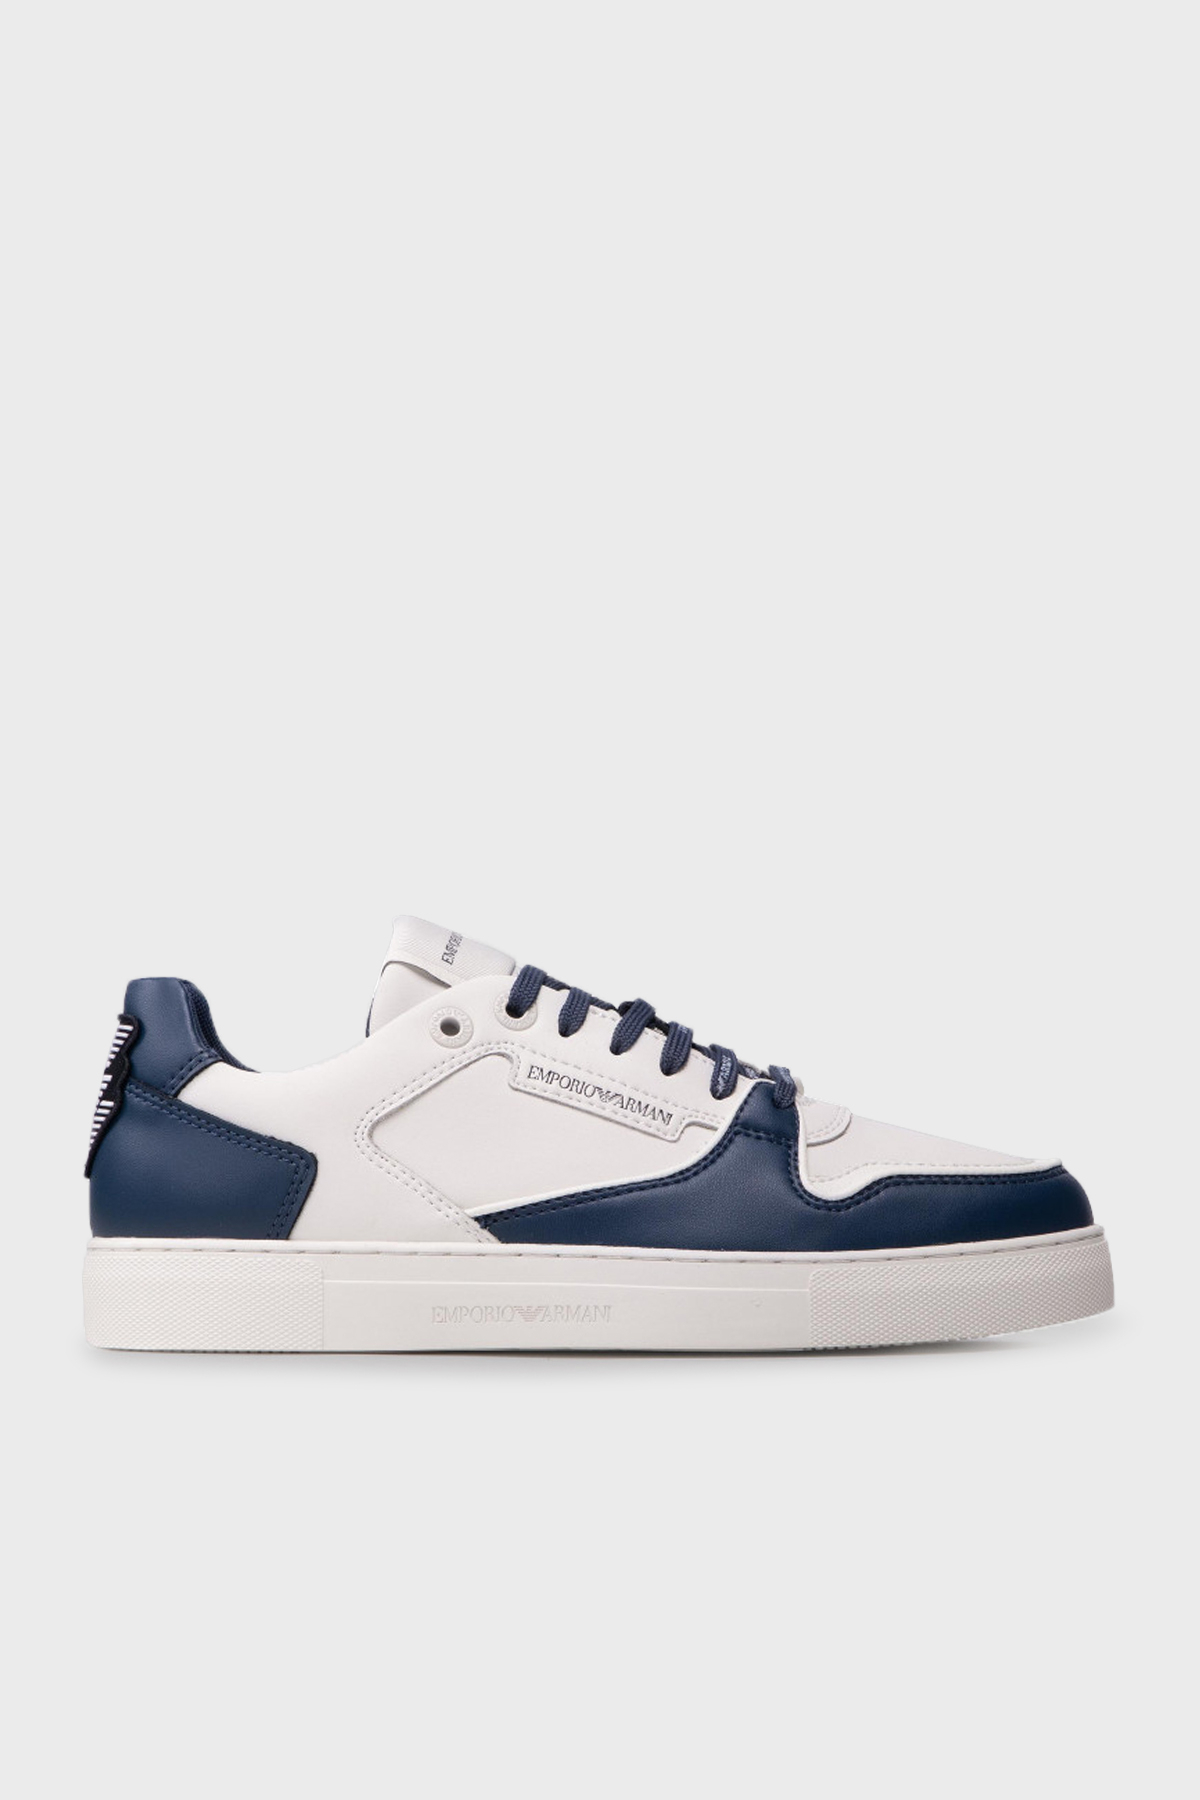 Emporio Armani Logolu Deri Sneaker Erkek Ayakkabı X4X549 XN185 Q814 Kırık Beyaz-Lacivert